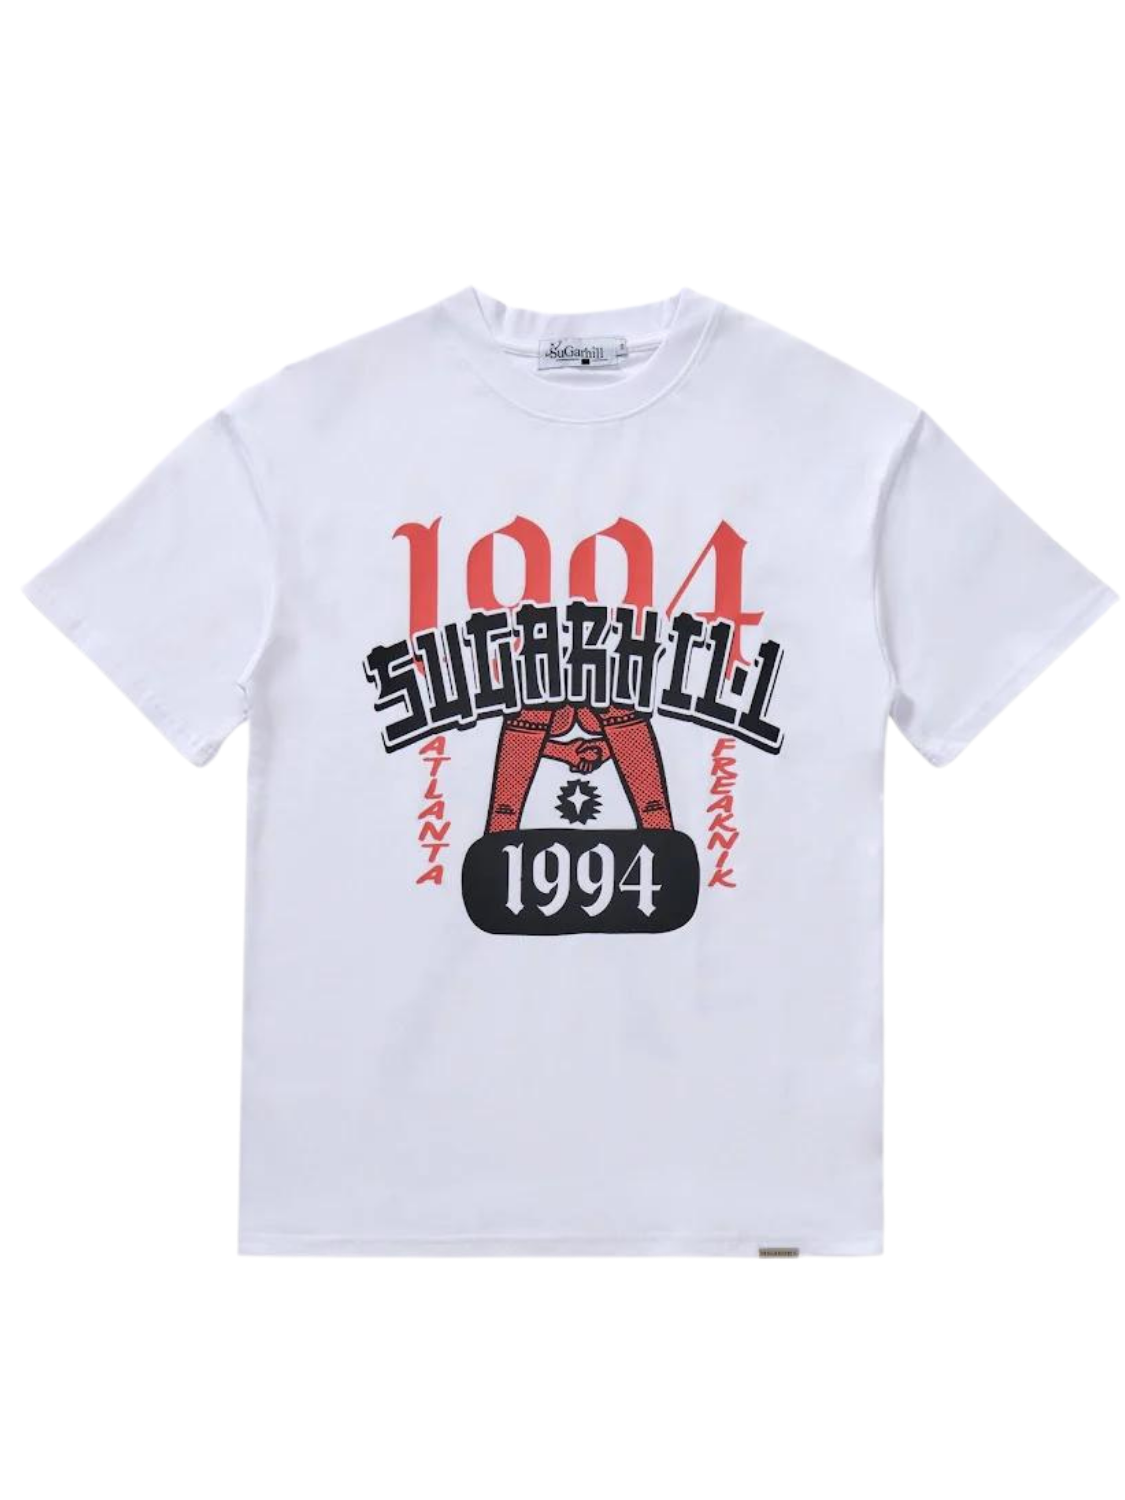 SugarHill "1994" T-Shirt (White)